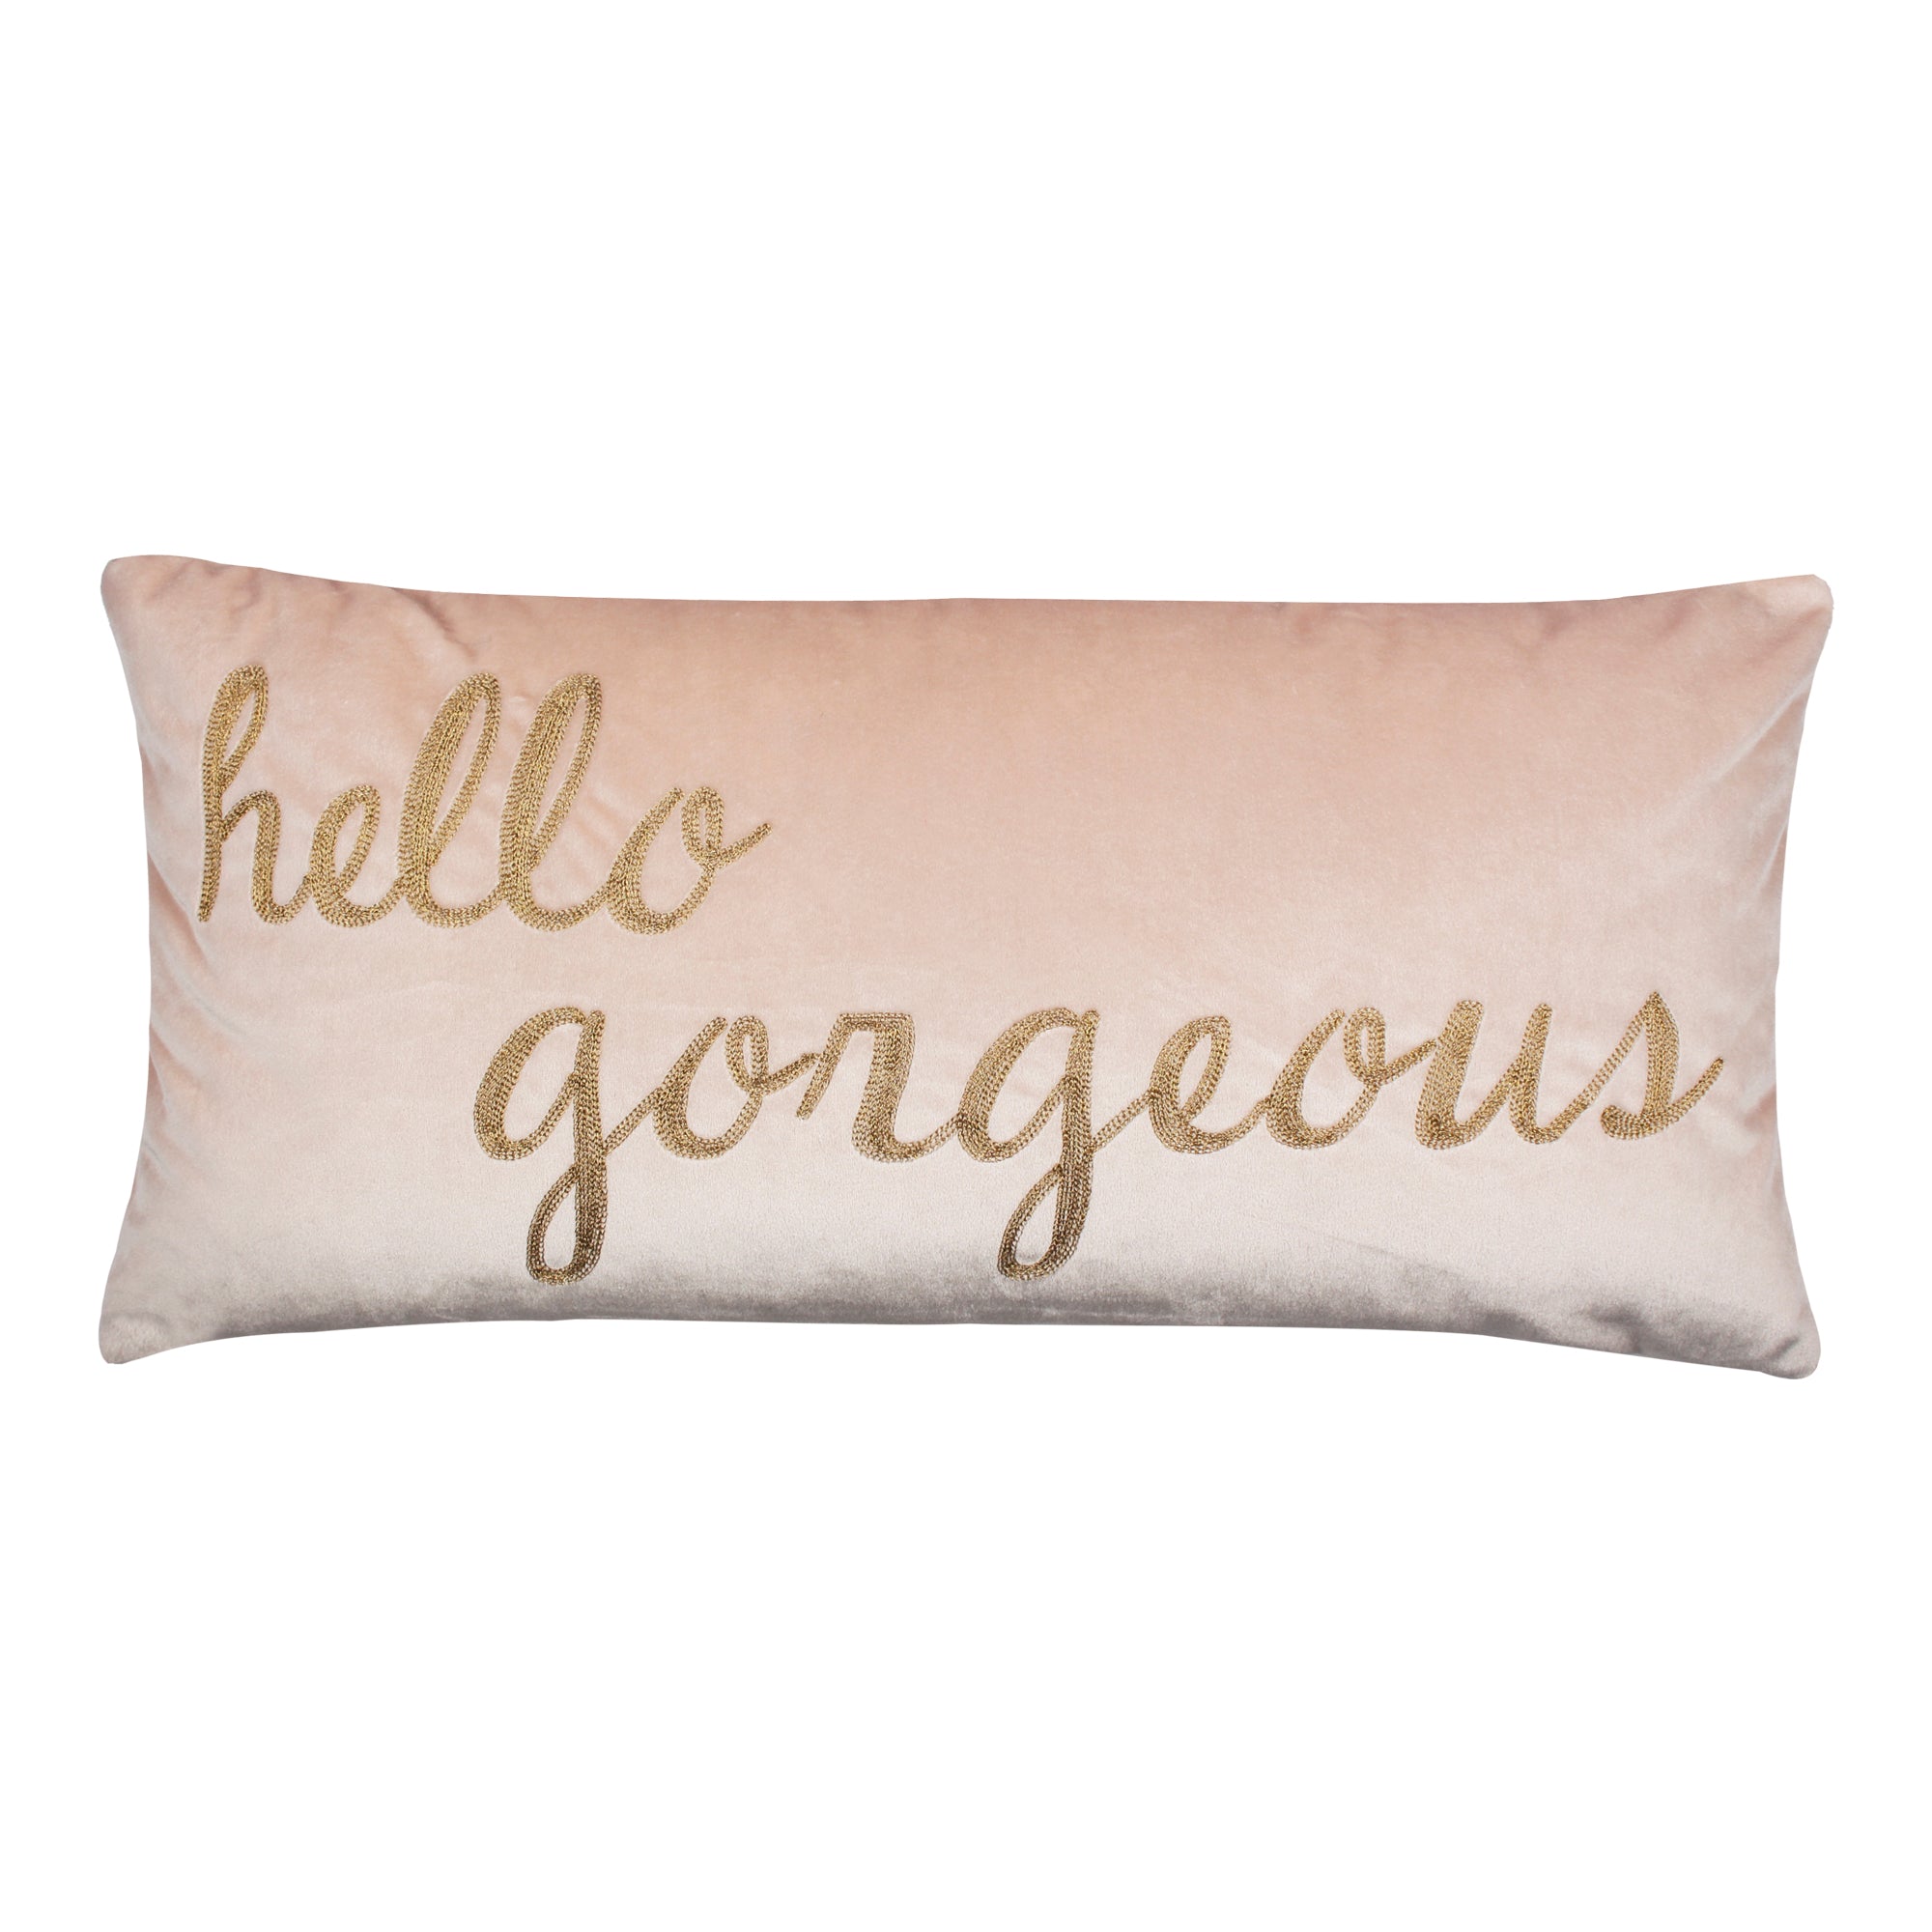 Fiori Hello Gorgeous Pillow